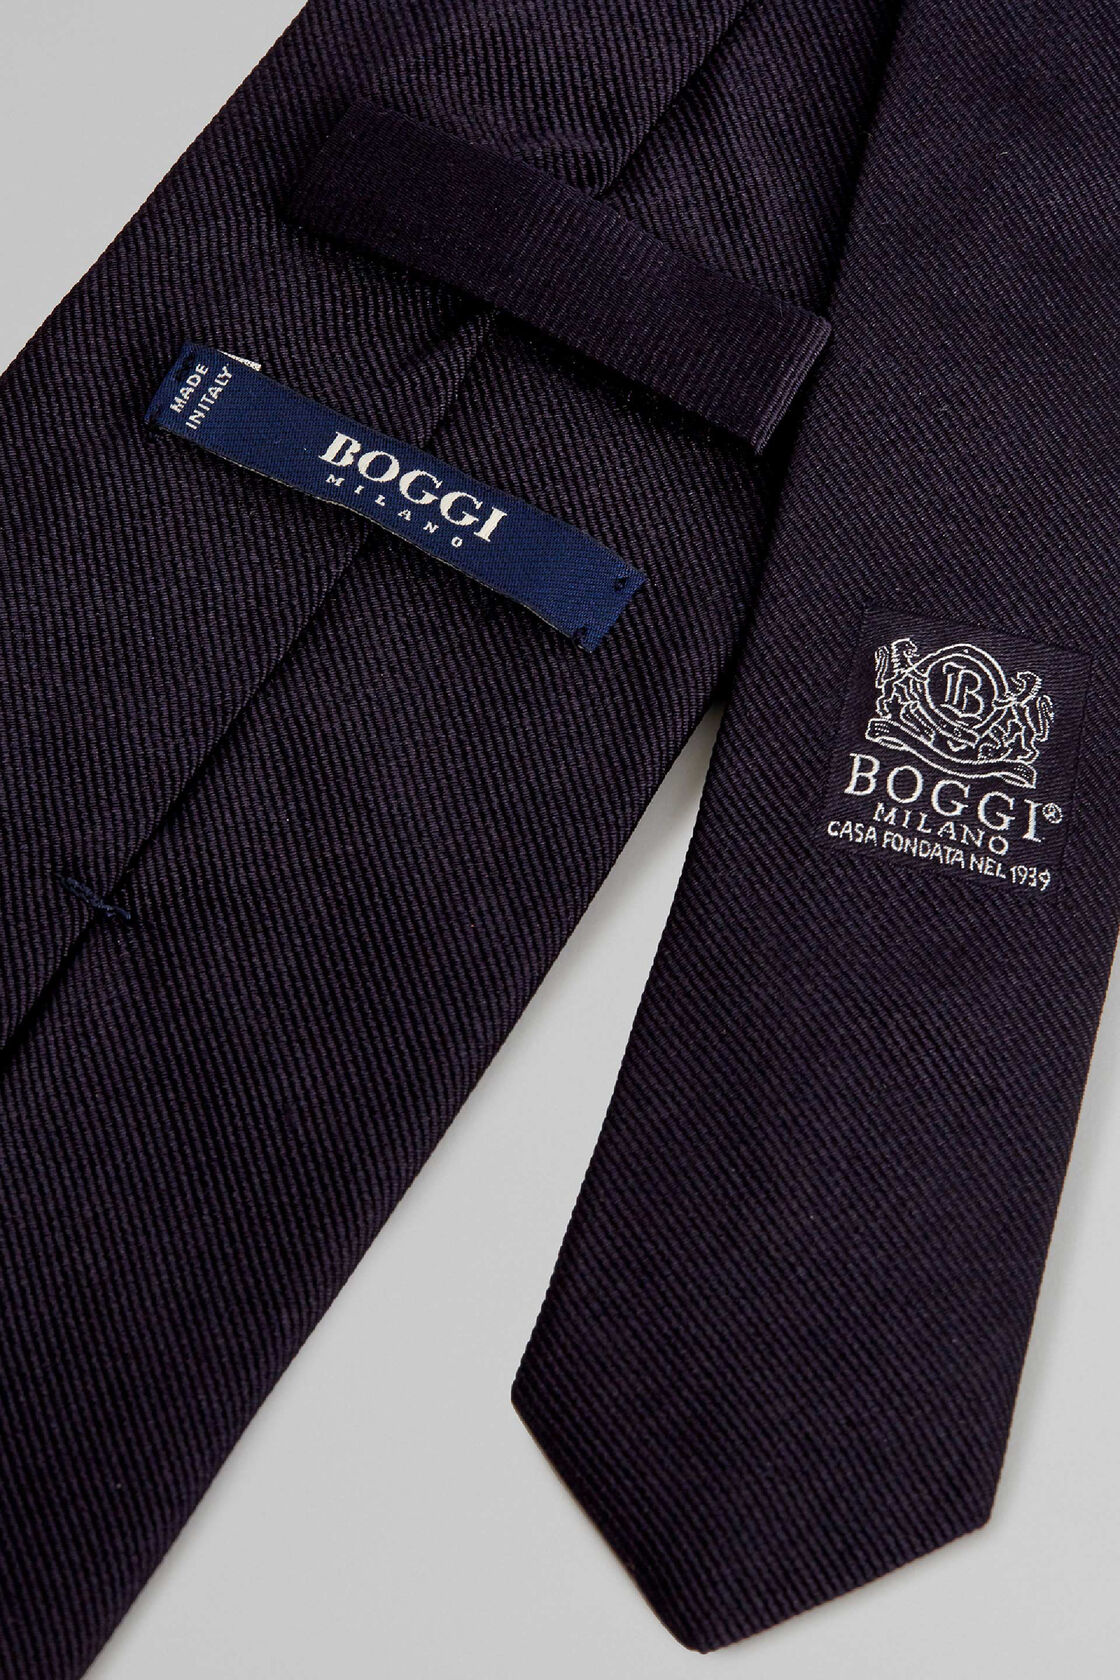 Boggi krawatte - Der Vergleichssieger 